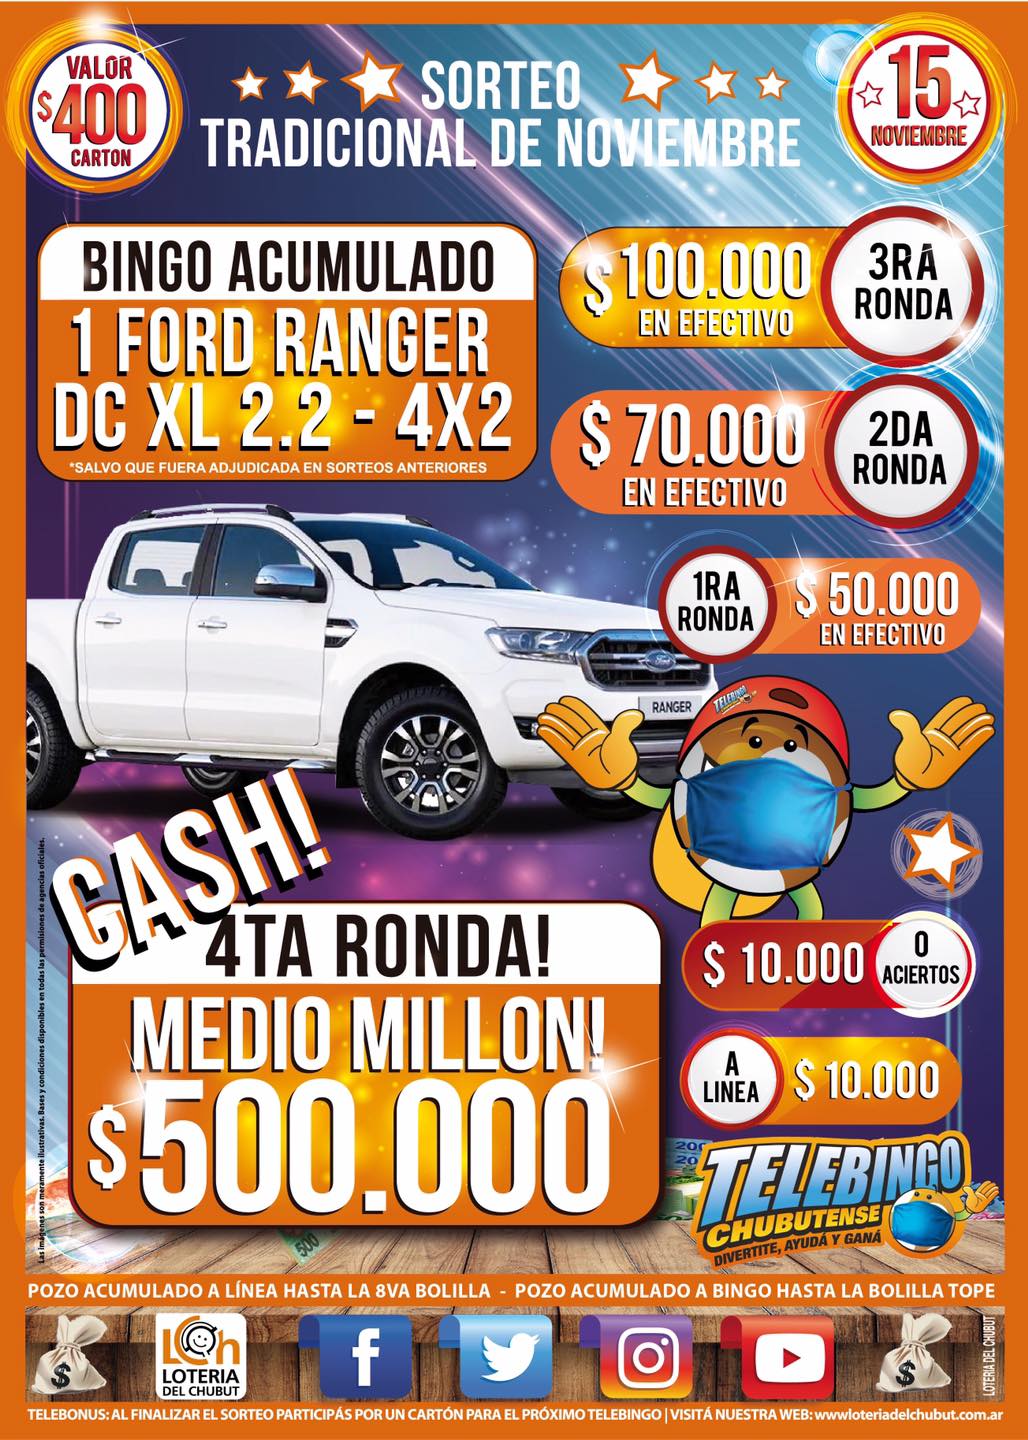 Lotería del Chubut: El Telebingo pone en juego $ 800.000 y una camioneta Ford Ranger